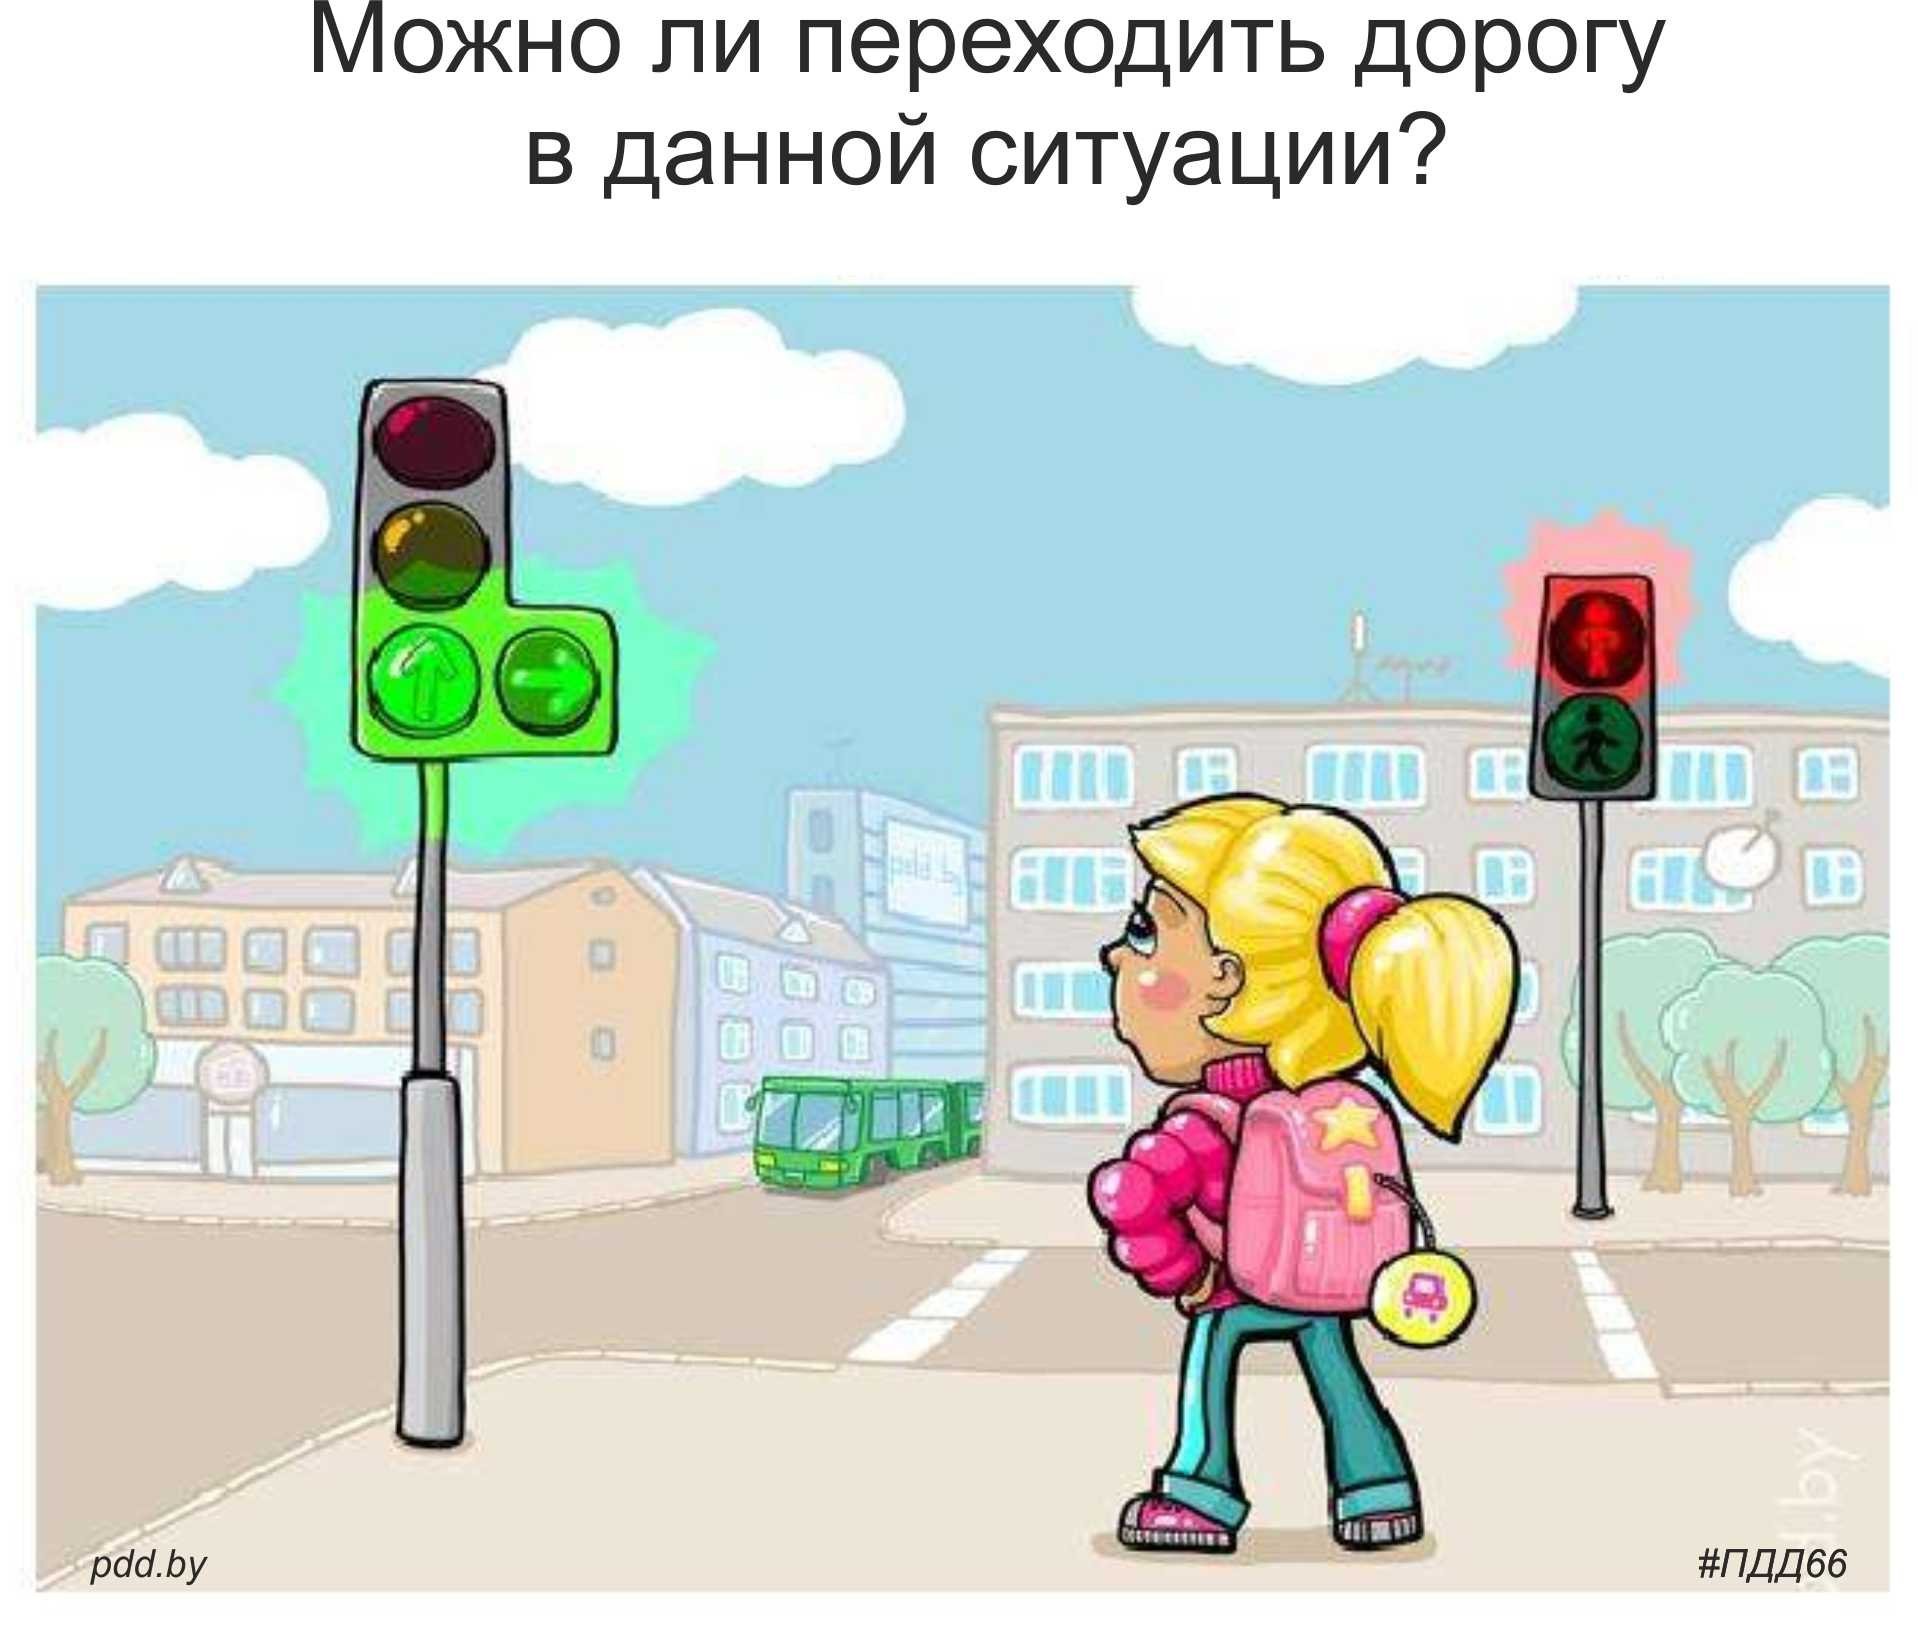 Светофор дорога дети. Светофор для пешеходов. Дорога со светофором для детей. Дети переходят до орогу на светофоре. Светофор рисунок.